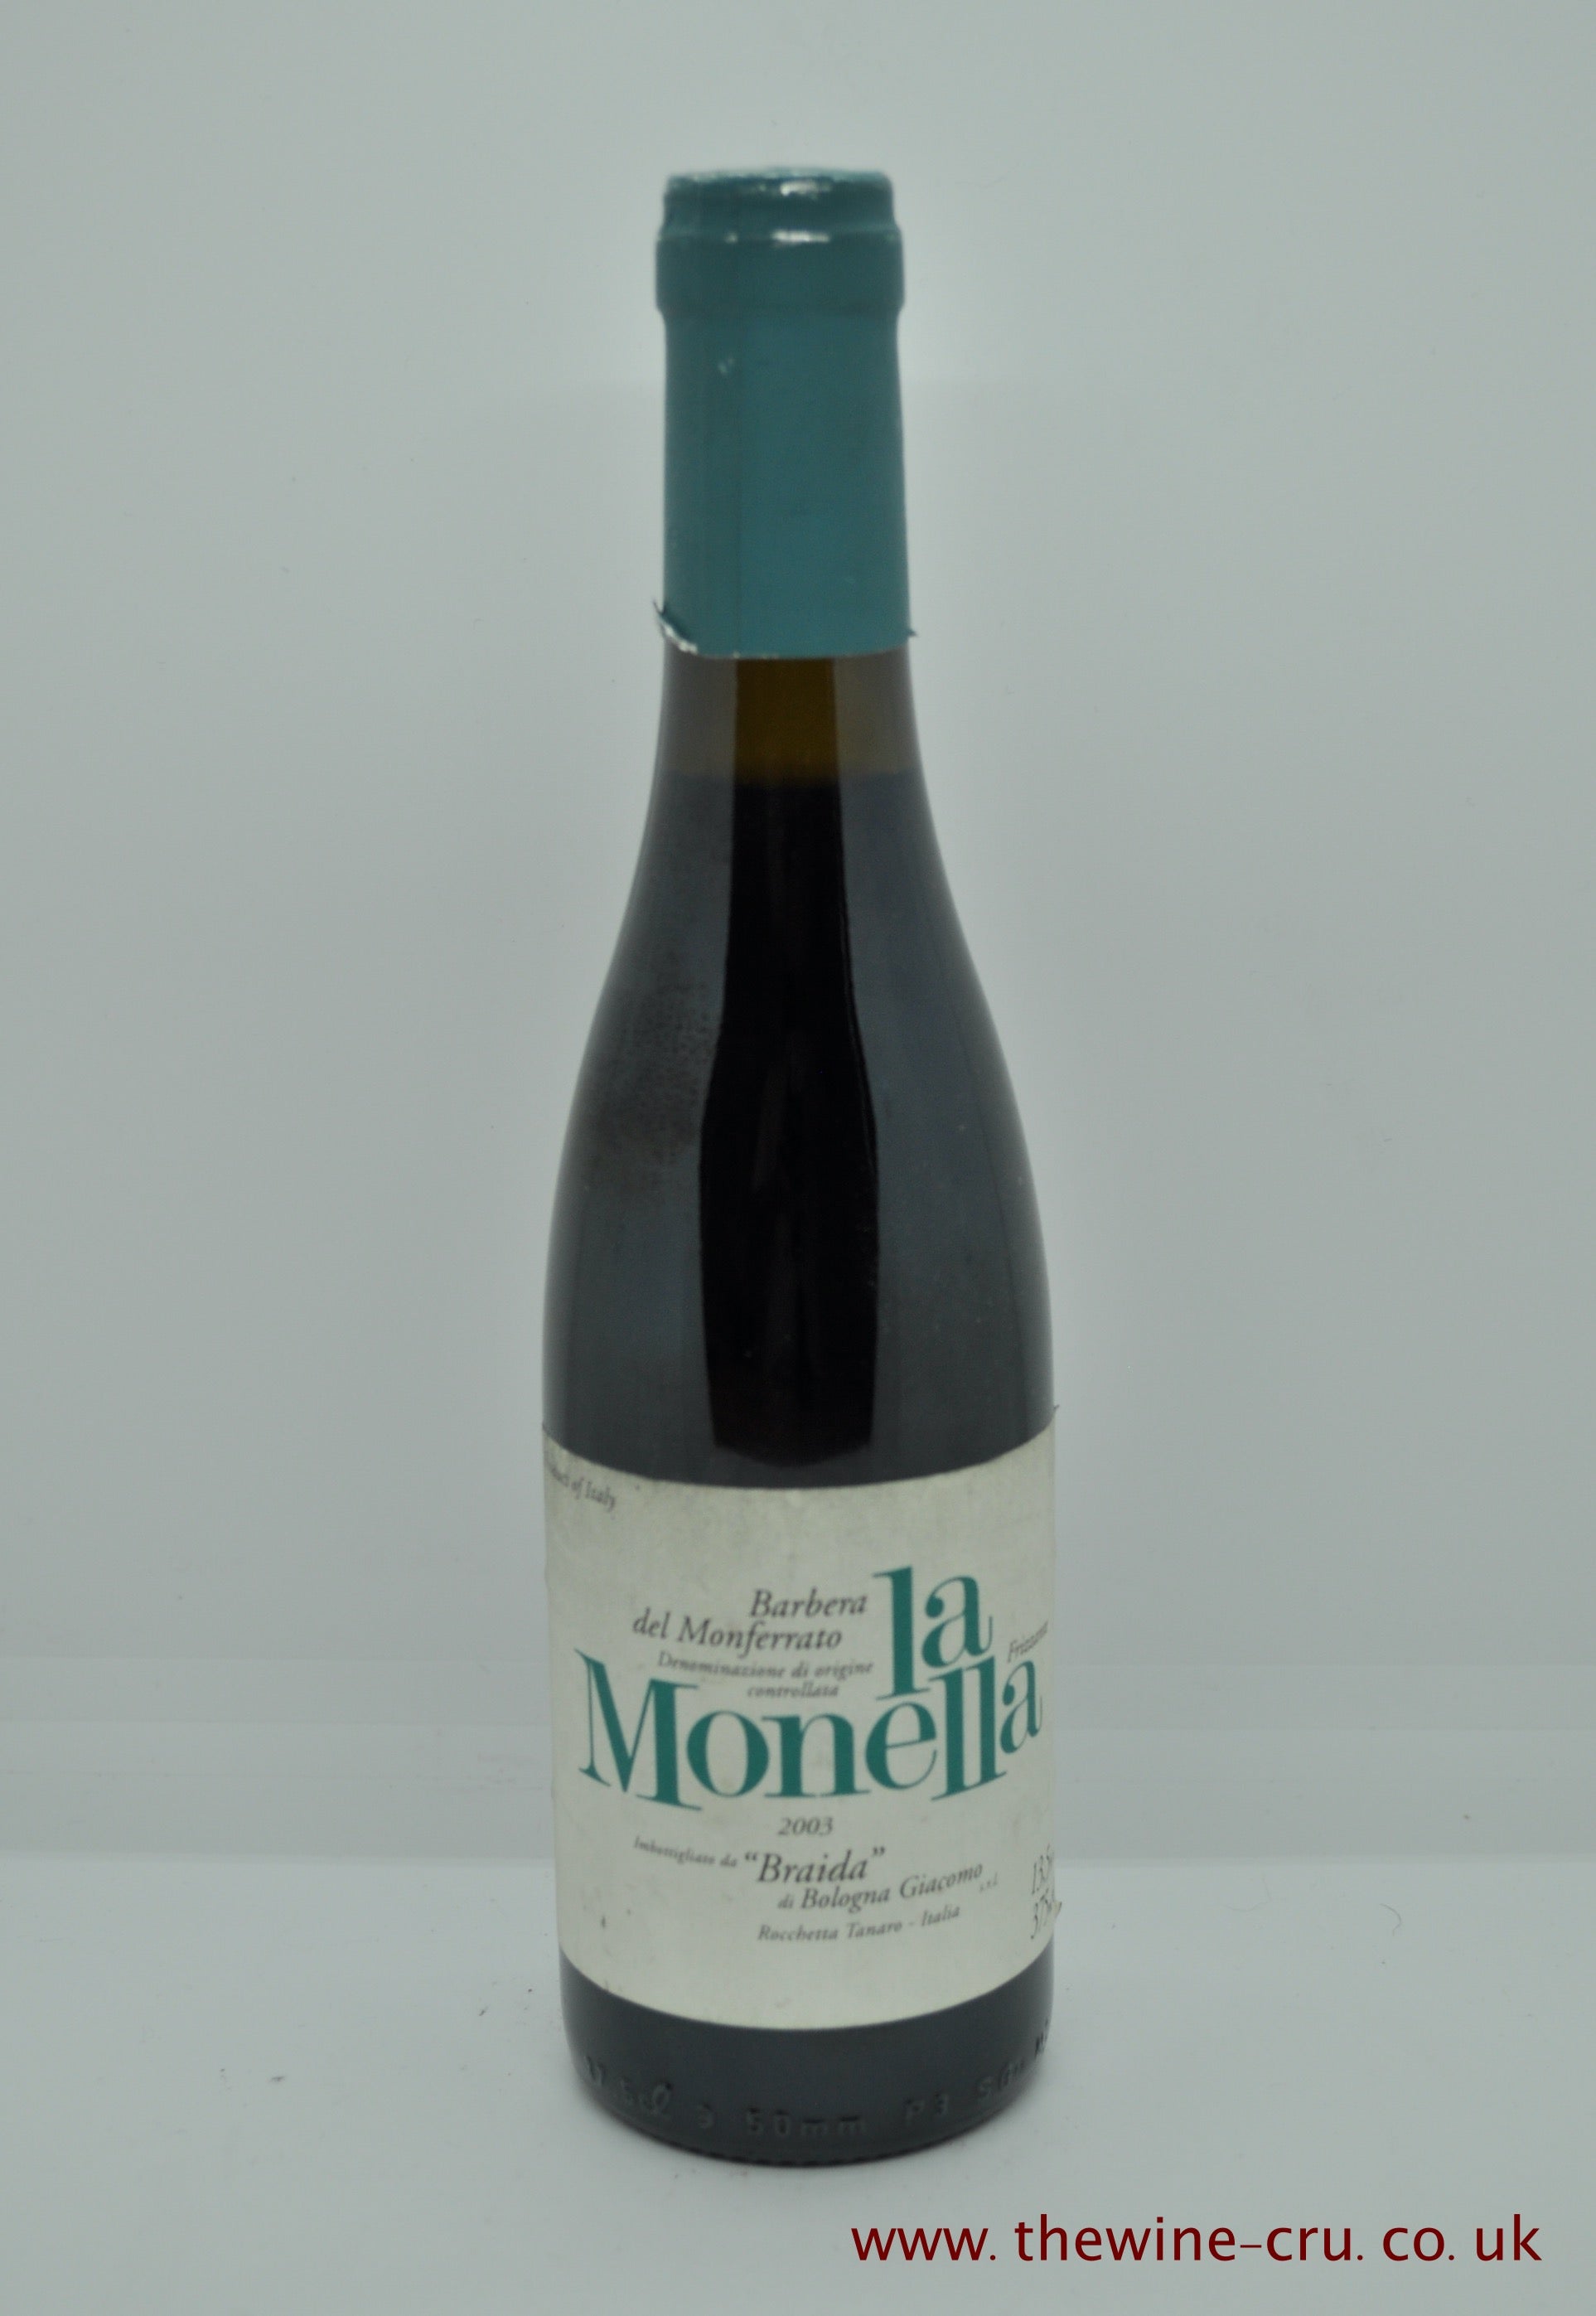 2003 vintage red wine. Barbera Del Monferrato La Monella Frizzante Braida Half 2003. Italy. Immediate delivery. Free local delivery. Gift wrapping available.